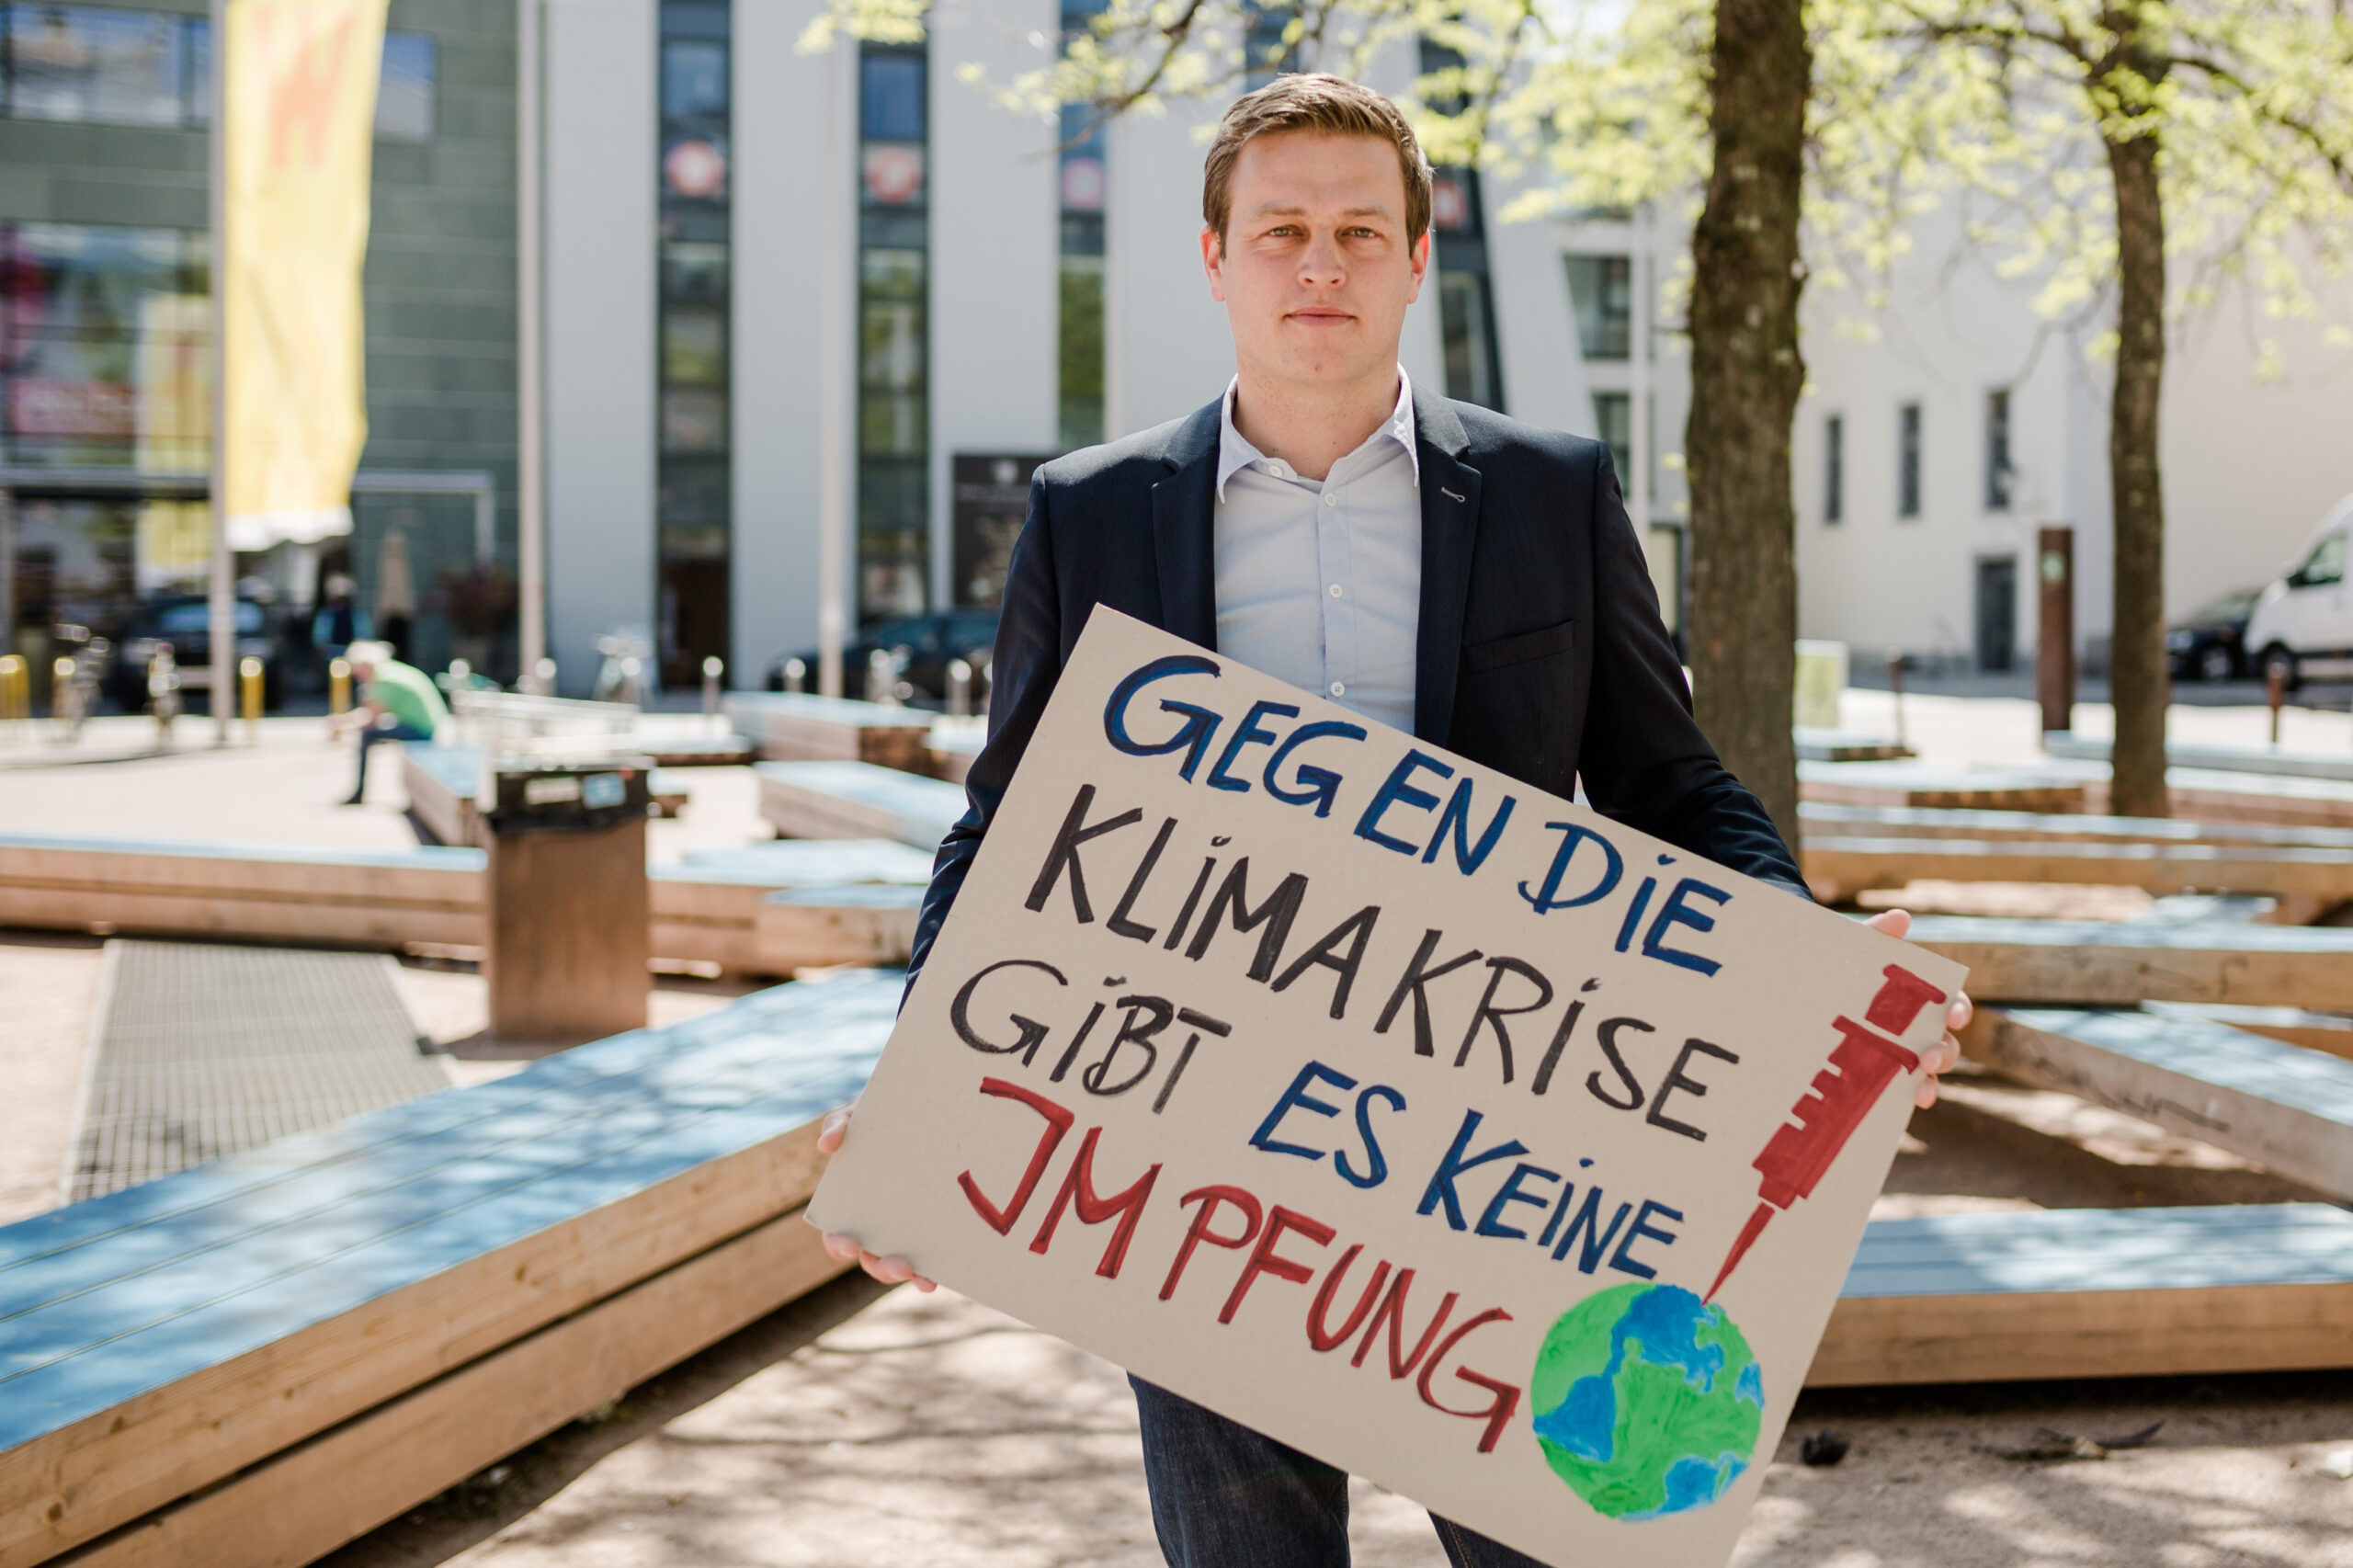 Stefan Kaineder mit Schild "Gegen die Klimakrise gibt es keine Impfung"